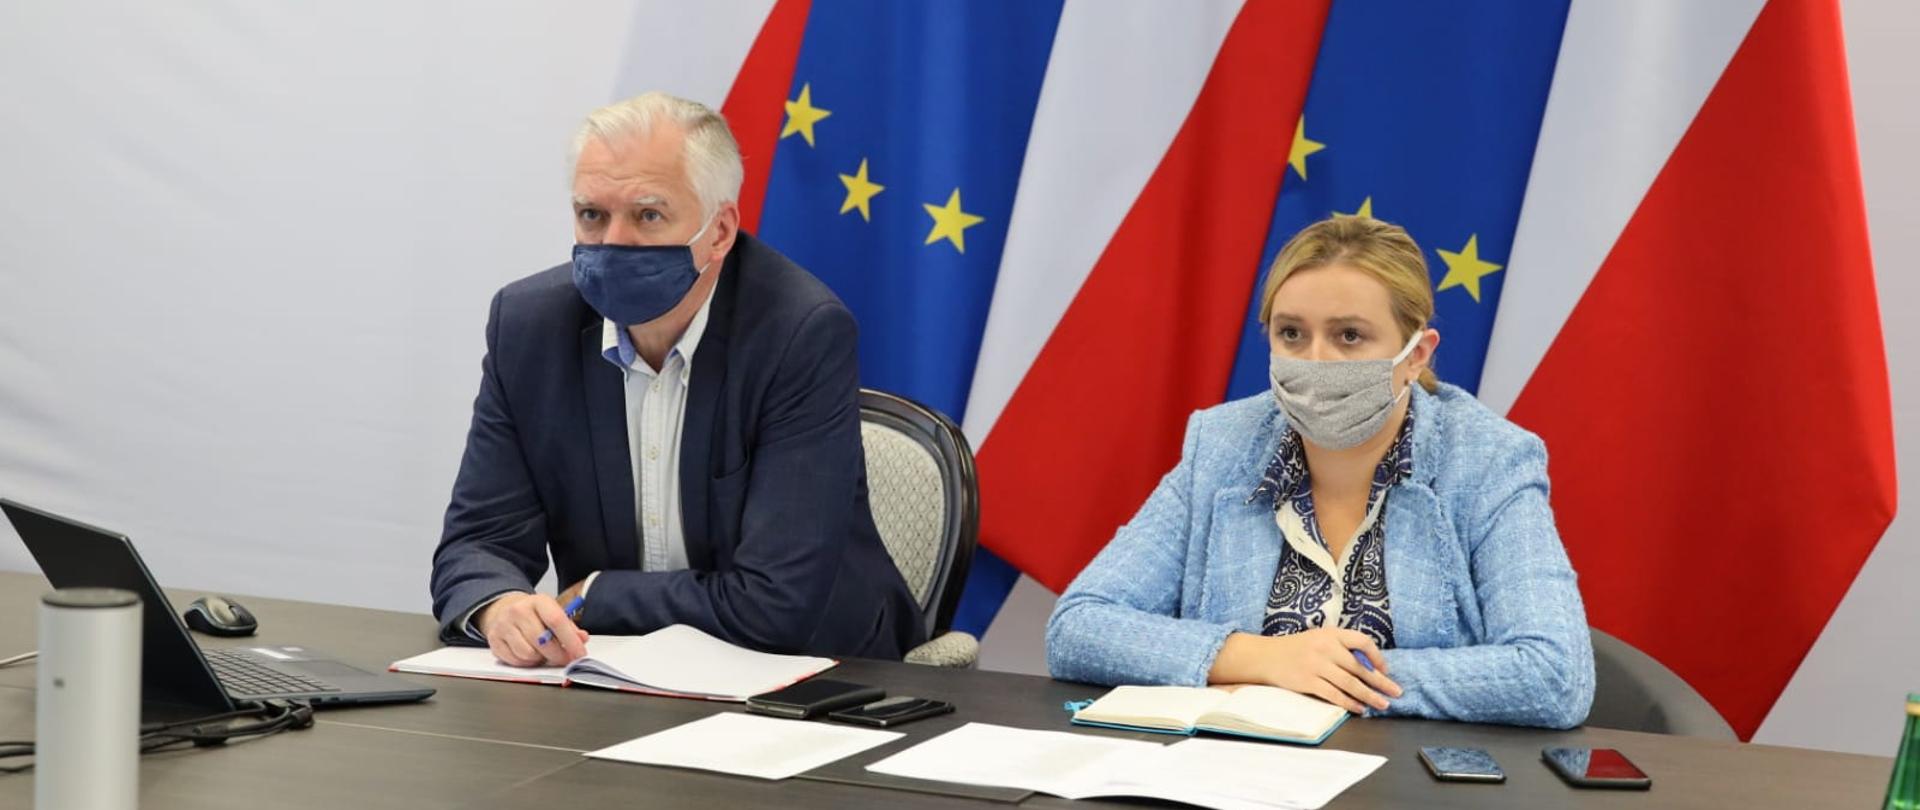 Na zdjęciu wicepremier Jarosław Gowin i wiceminister Olga Semeniuk podczas telekonferencji.
Siedzą za stołem, na stole rozłożone notatki, mają na twarzach maseczki, za ich plecami stoją flagi Polski i Unii Europejskiej.